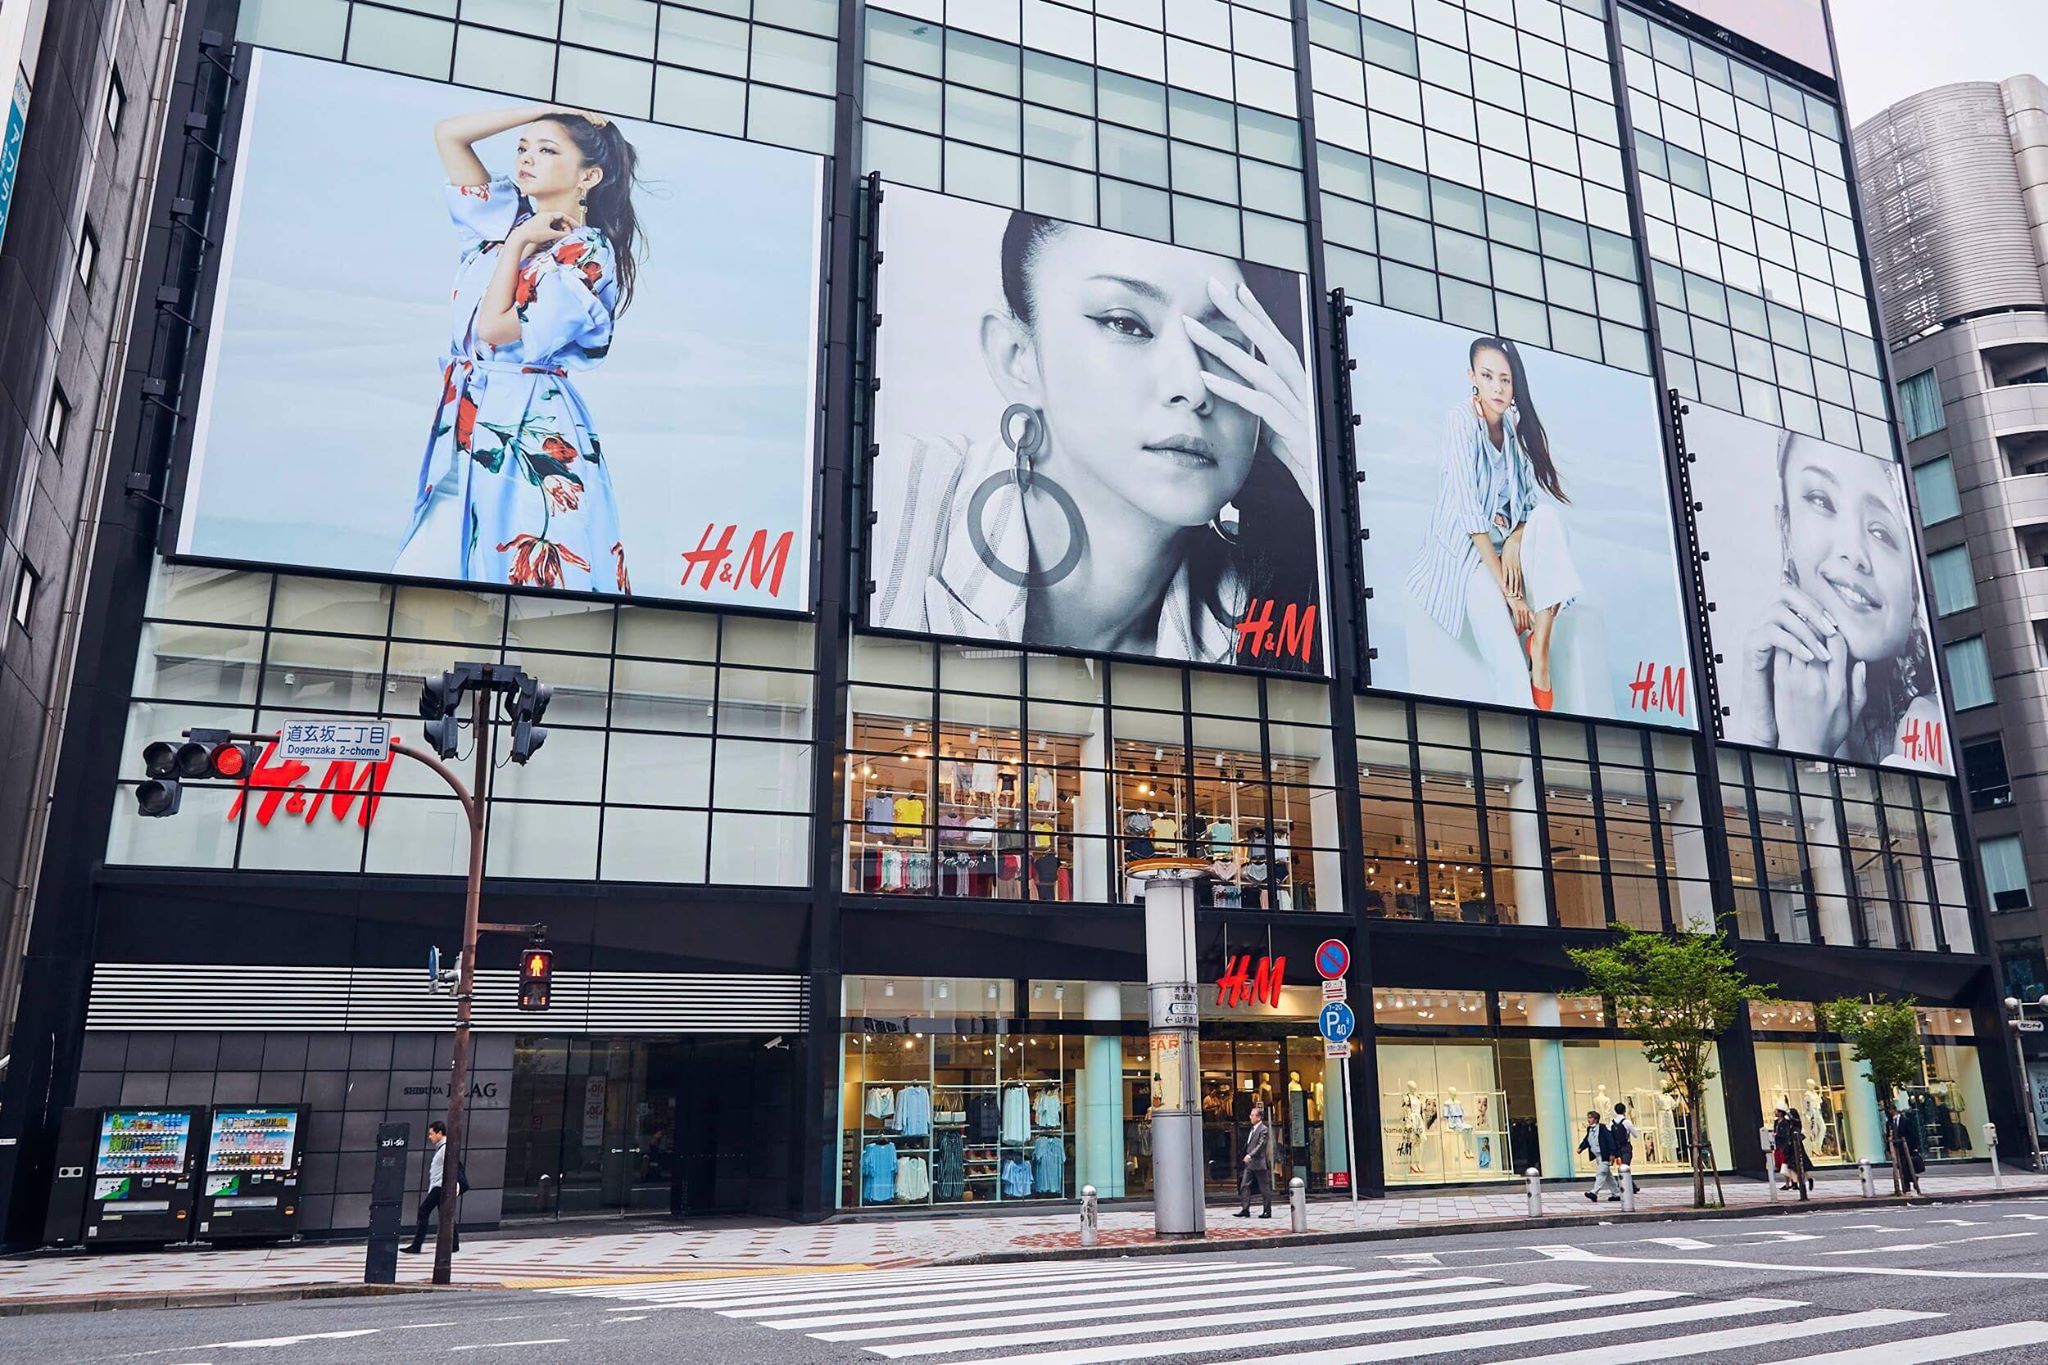 Namie Amuro x H&M」コレクションを日本、アジアのH&M店舗および公式 